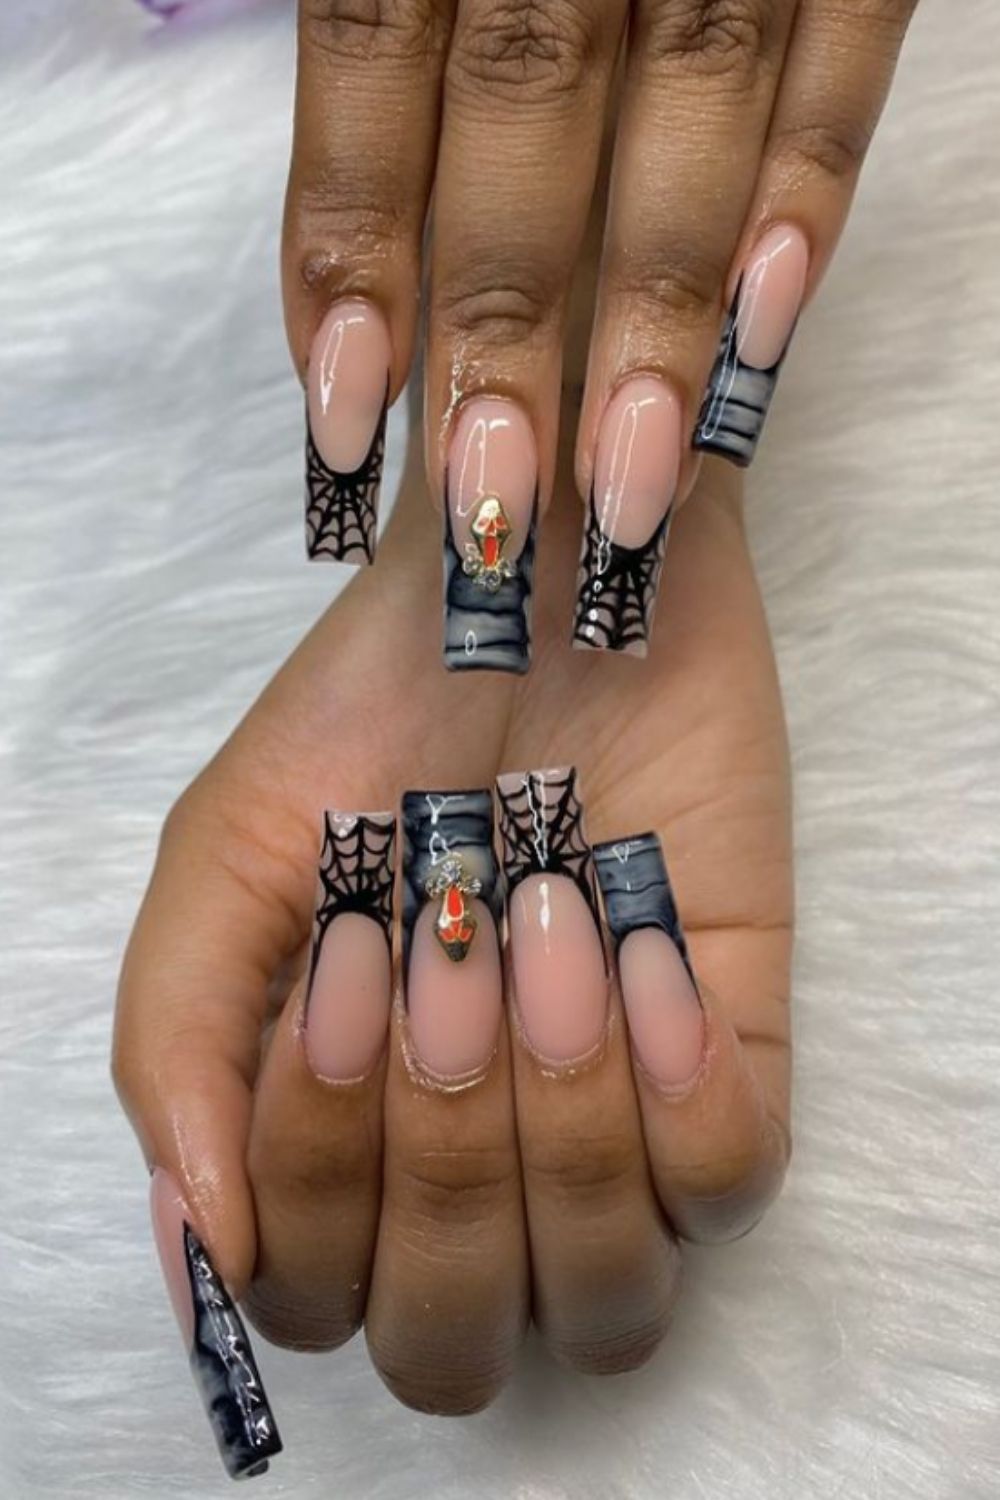 Black tip nails